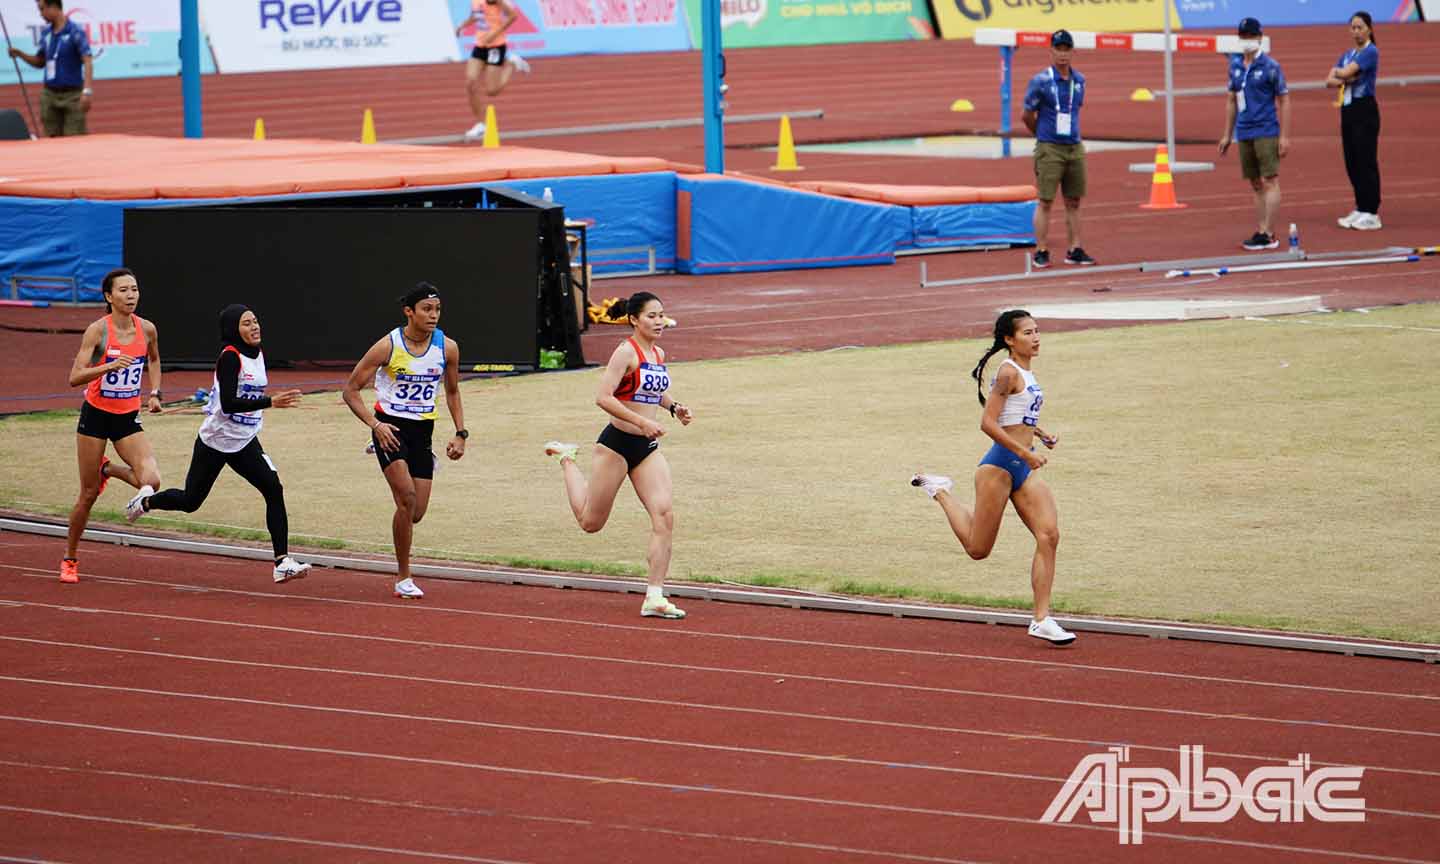 VĐV Khuất Phương Anh bứt tốc về đích để giành chiến thắng ở nội dung 800m nữ.